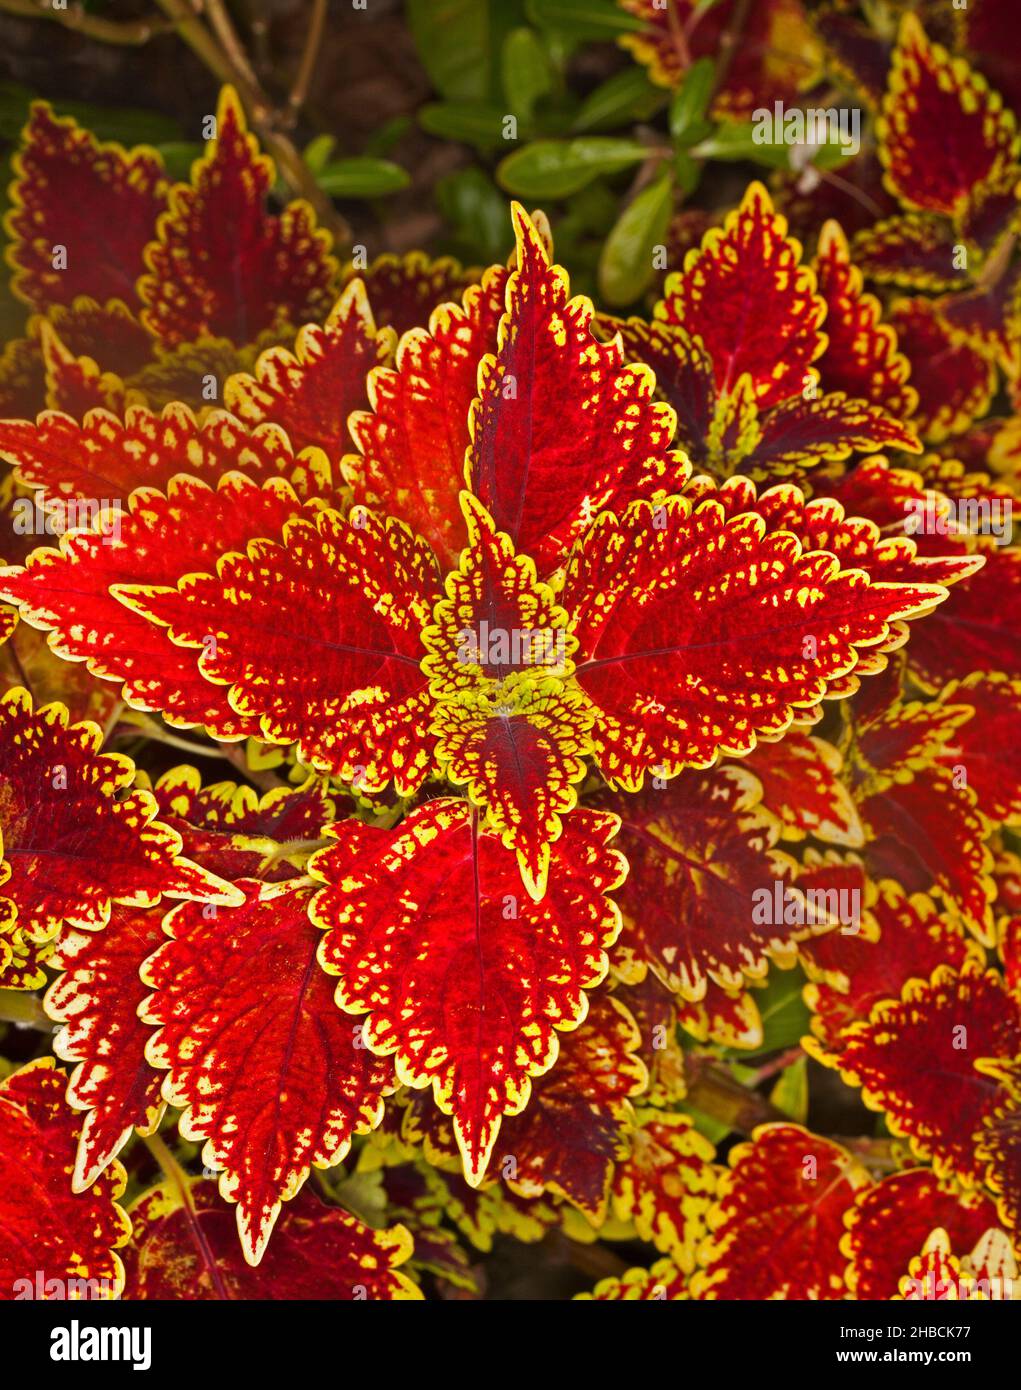 Farbenfrohe, leuchtend rote Blätter mit gelben gezackten Rändern der Sorte Coleus, Solenostemon, einer mehrjährigen Gartenpflanze, in Australien Stockfoto